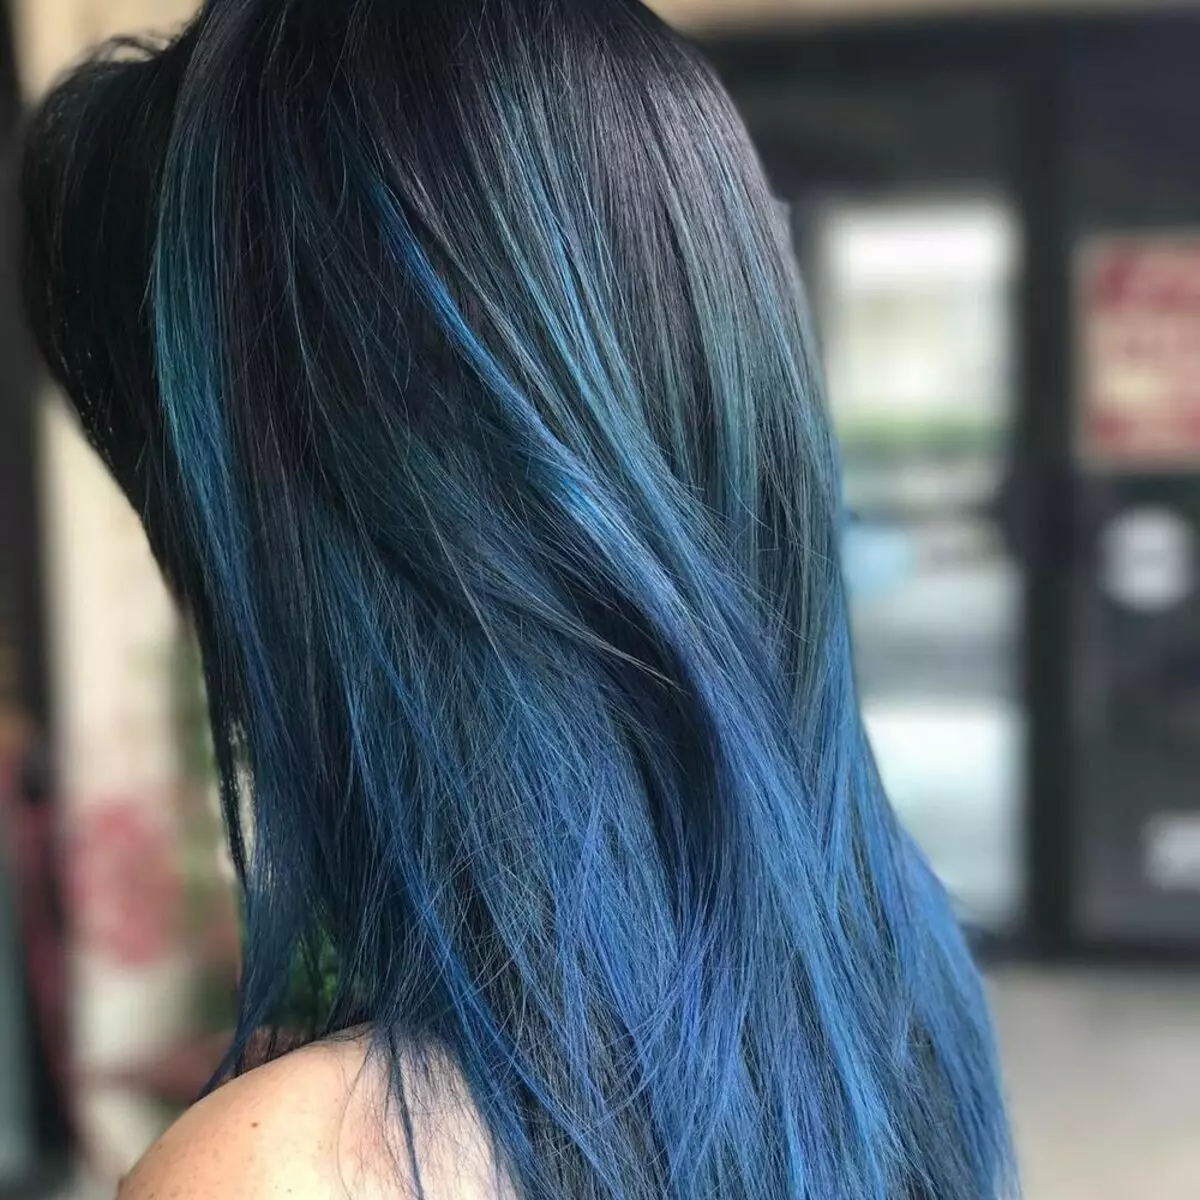 צבע שיער כחול: סקירה של צבעי שיער עמיד עם צבת כחול, מ כחול בהיר לגוונים שחורים וכחולים 5402_42